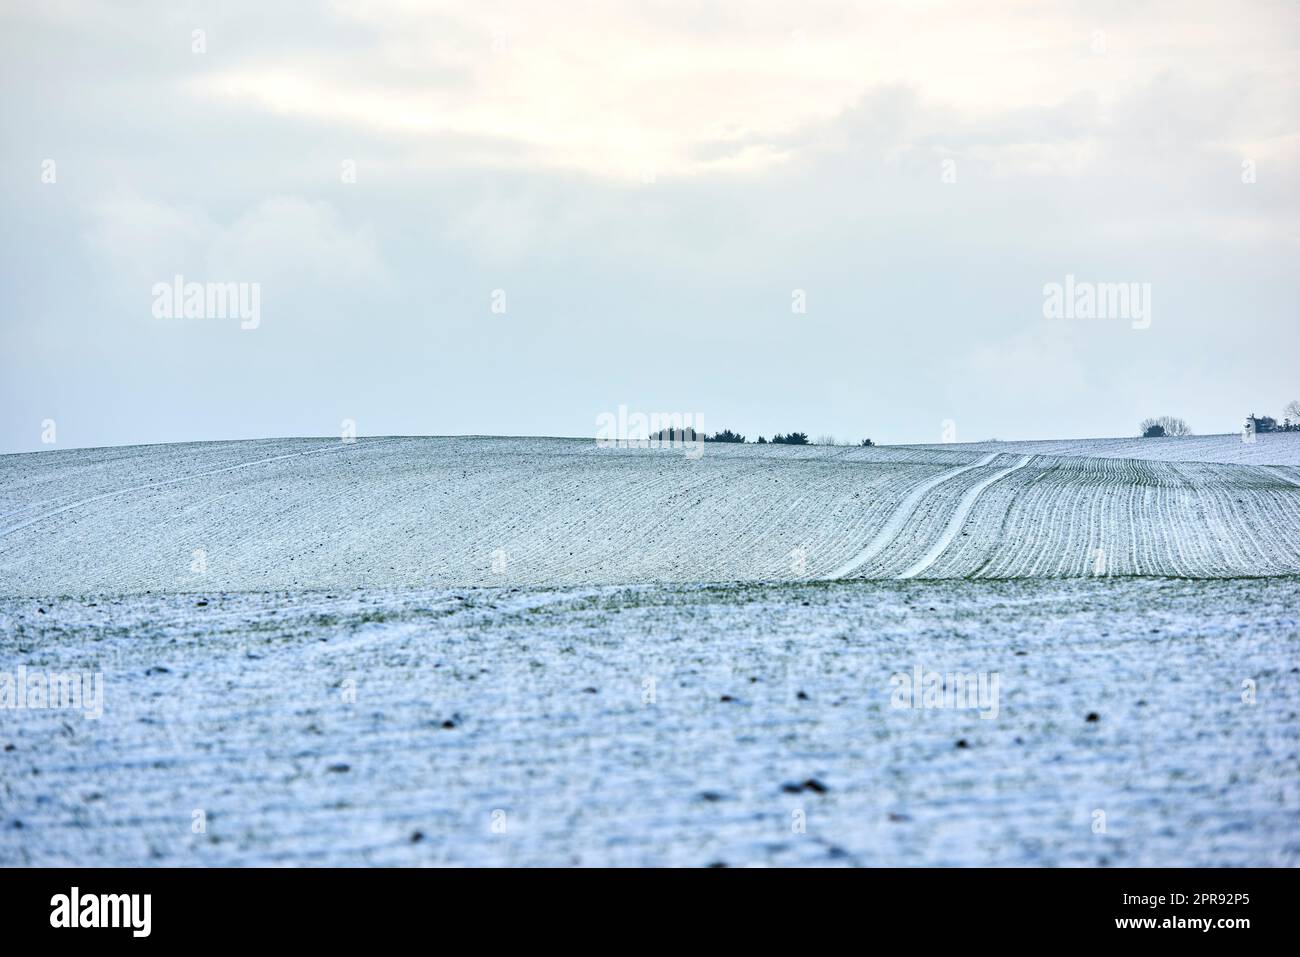 Paesaggio di campagna in una fredda giornata invernale con sfondo nuvoloso e spazio per copiare. Paesaggio naturale di un campo agricolo, prati o prati ricoperti di neve bianca in una mattinata illuminata Foto Stock